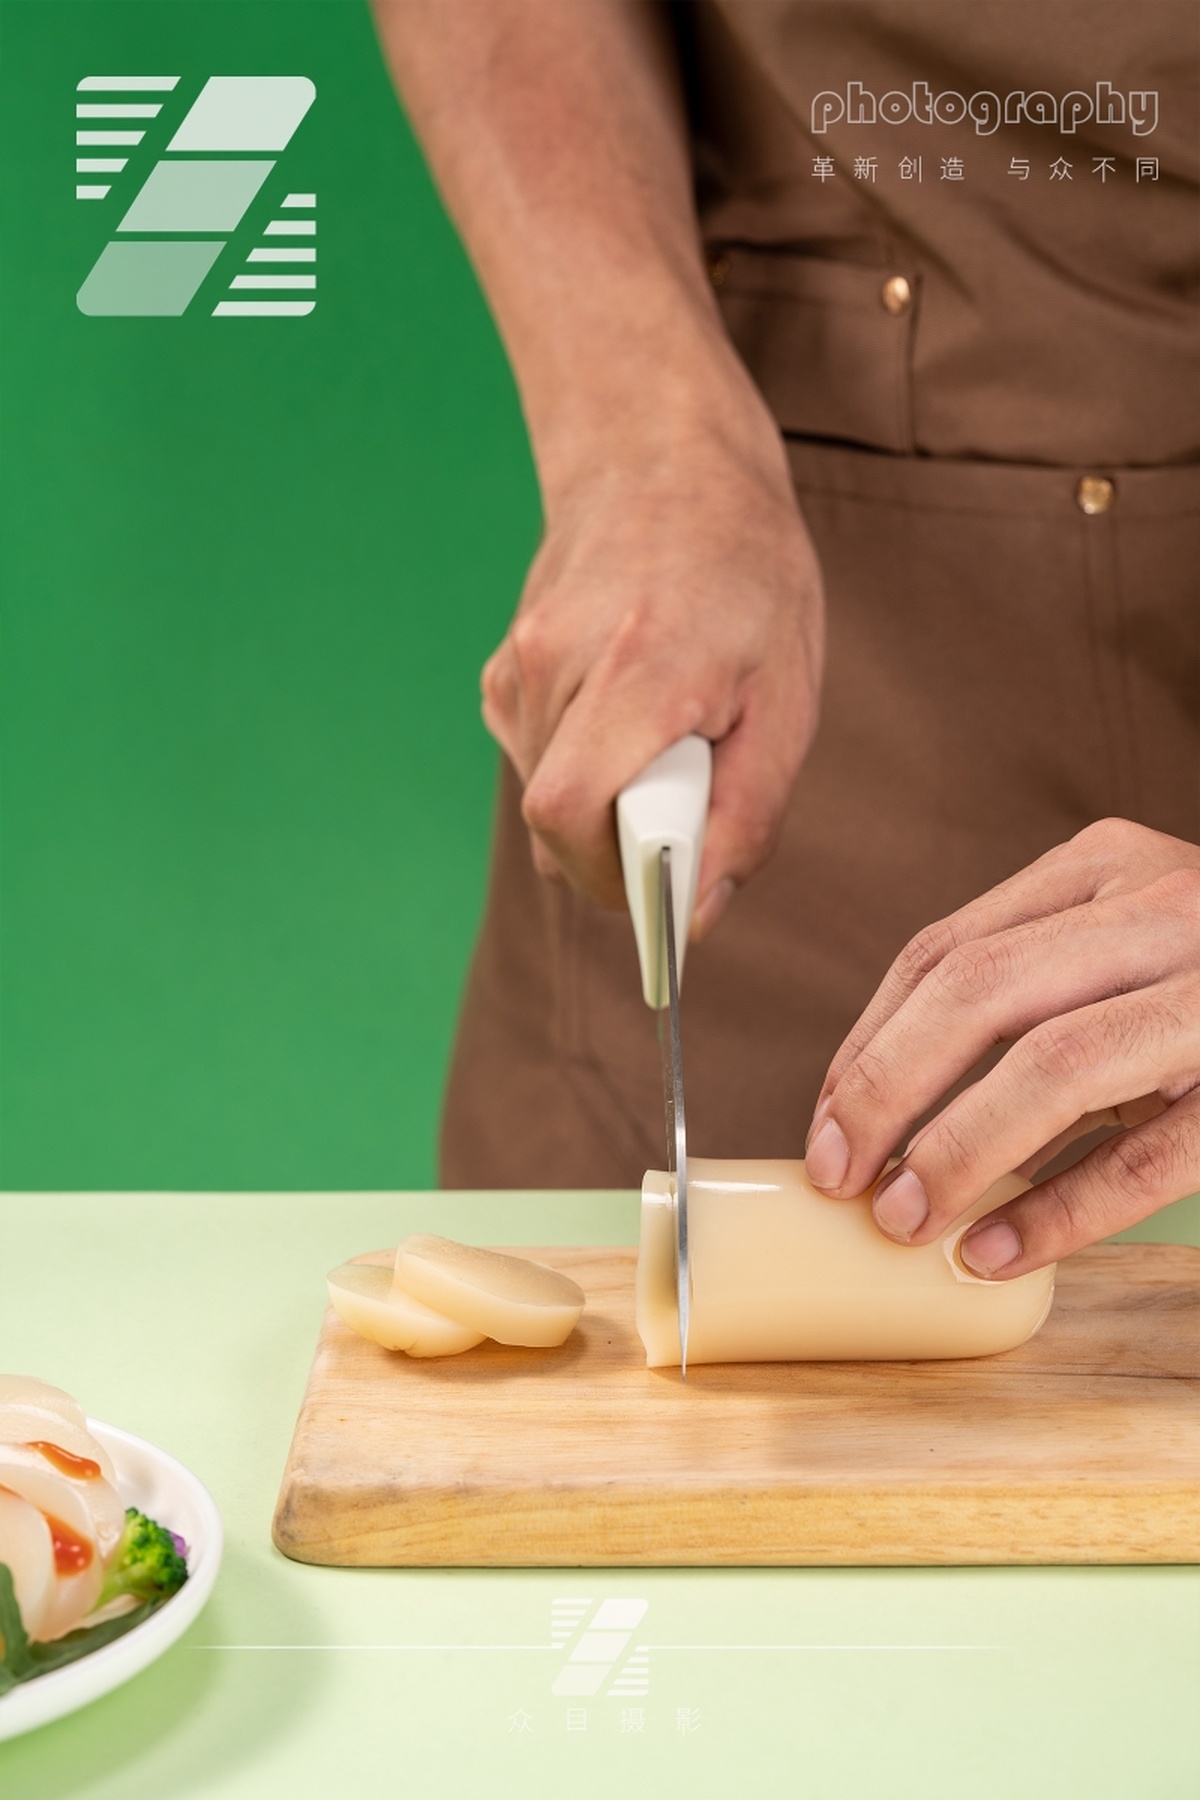 一个人正在一块小木板上切着一些奶酪 桌子上放着一盘蔬菜。